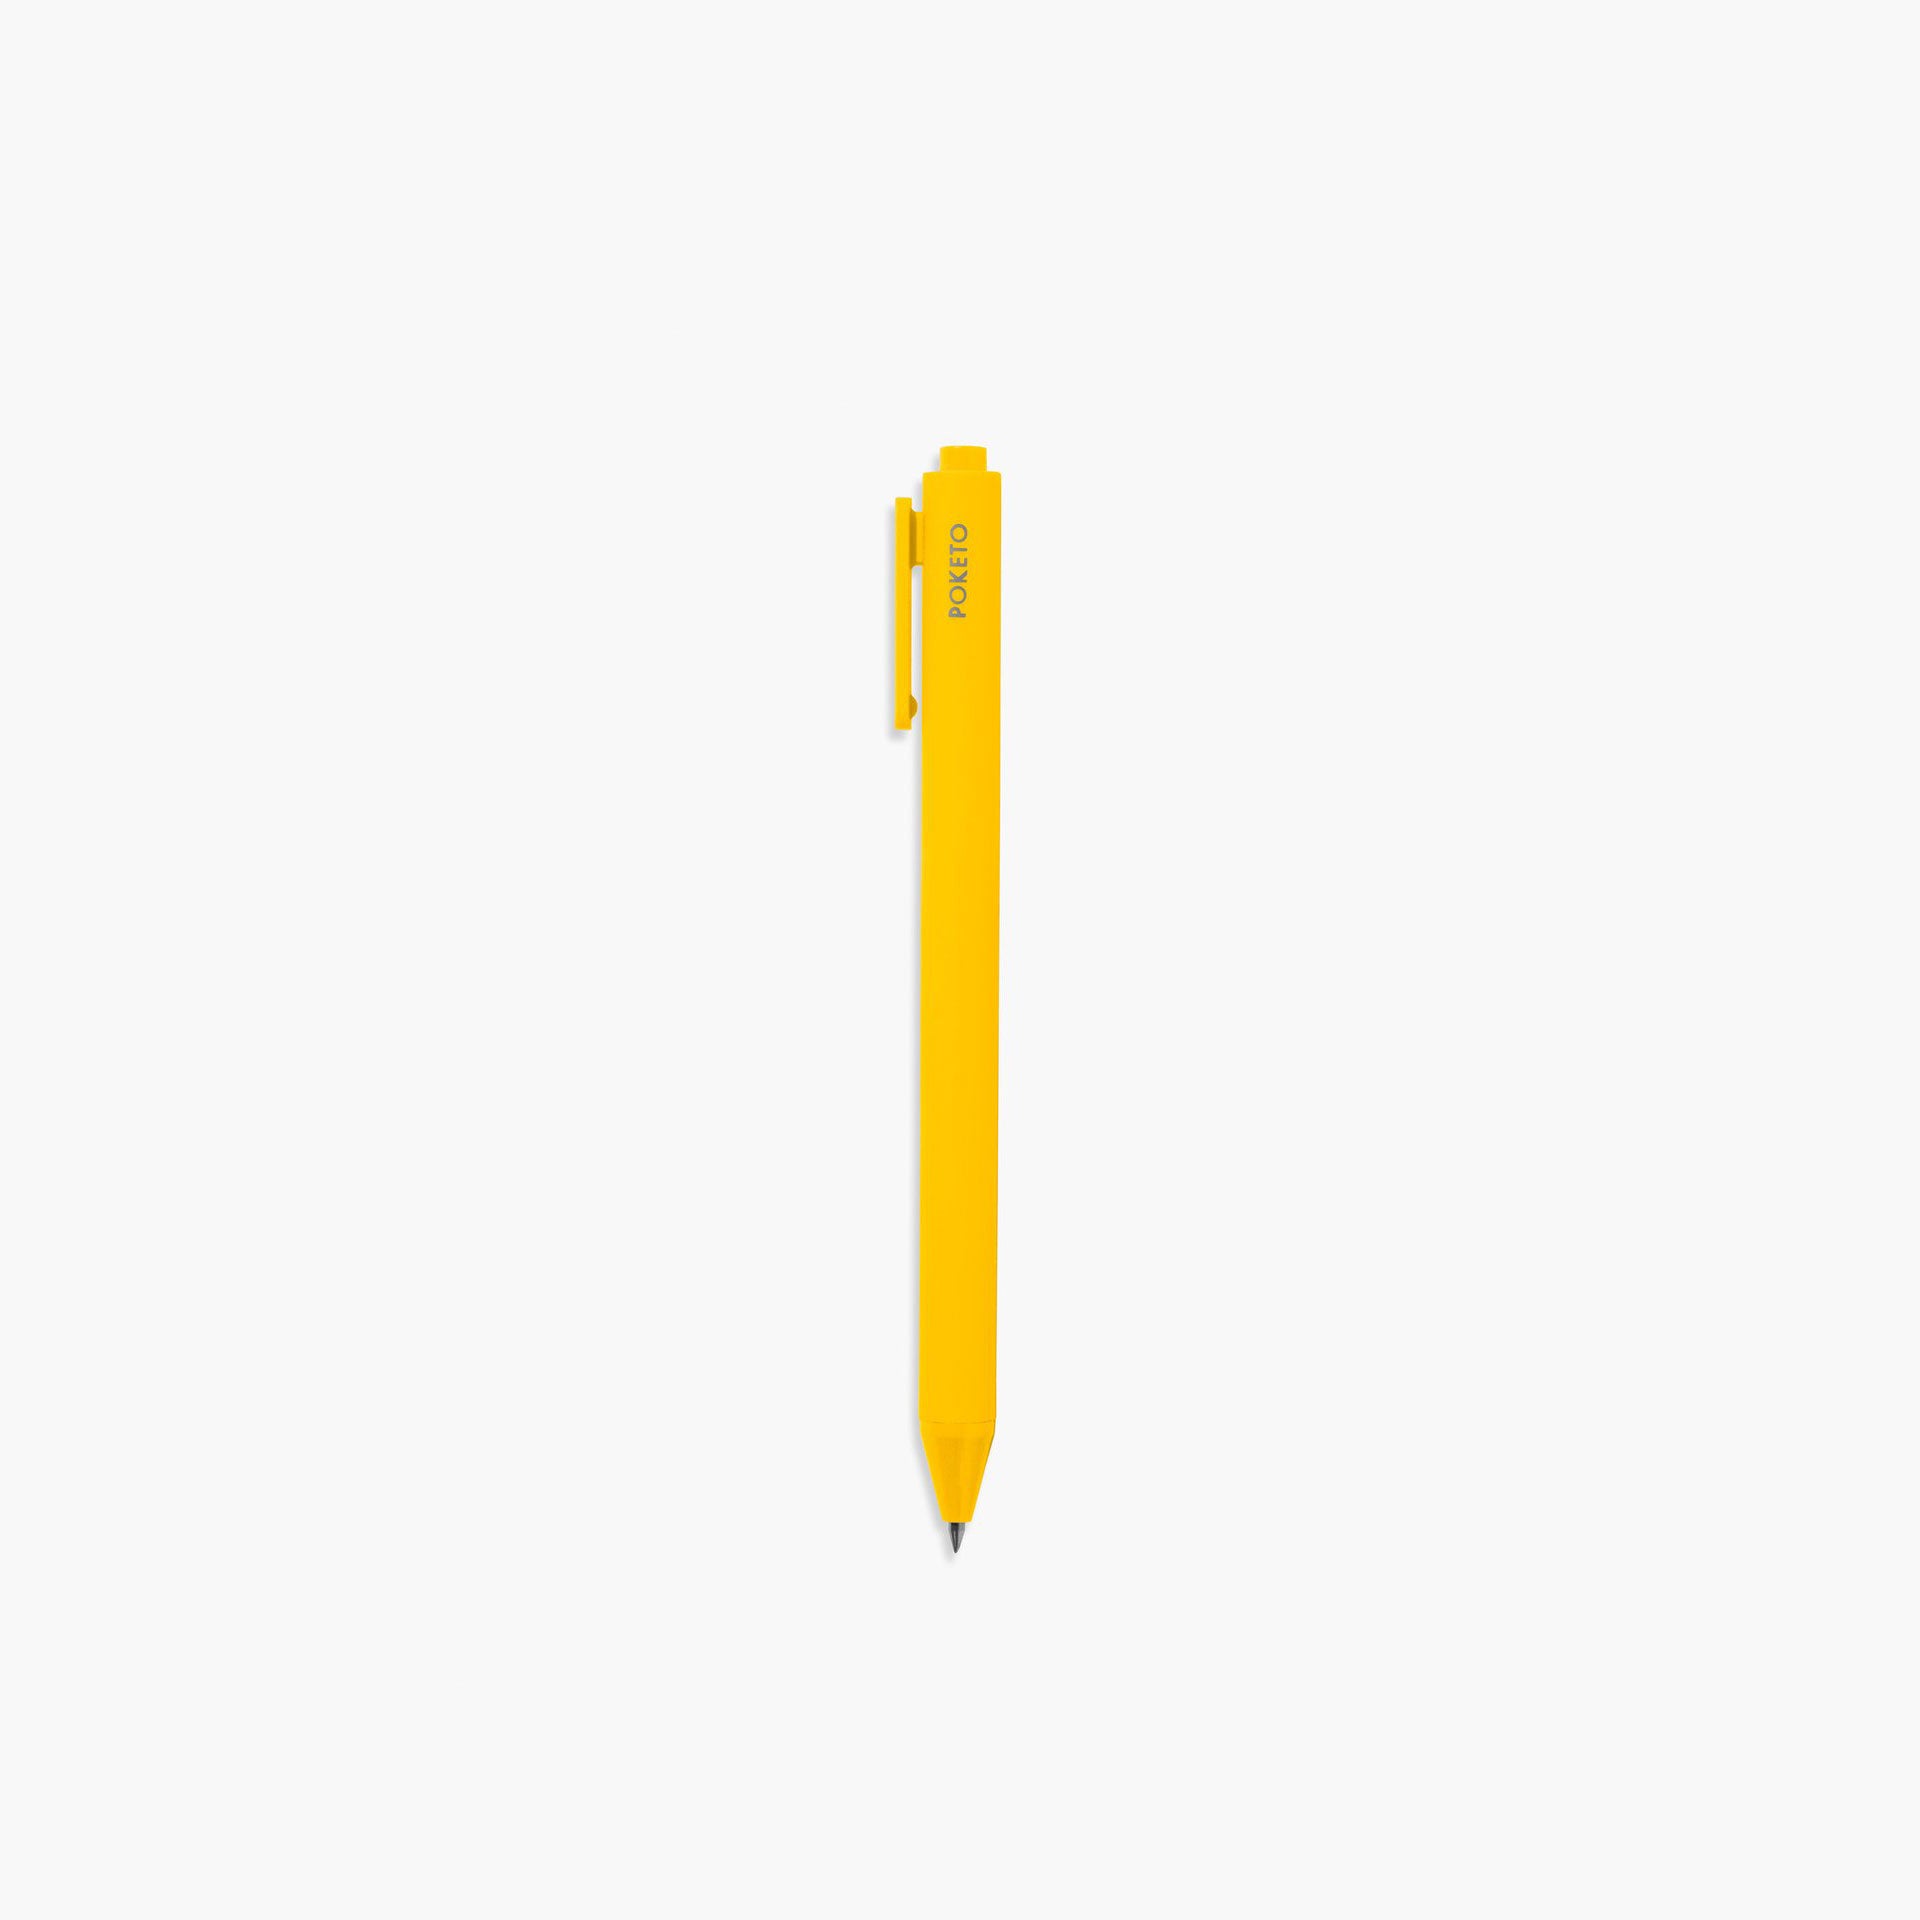 Poketo Vivid Gel Pens in Bright